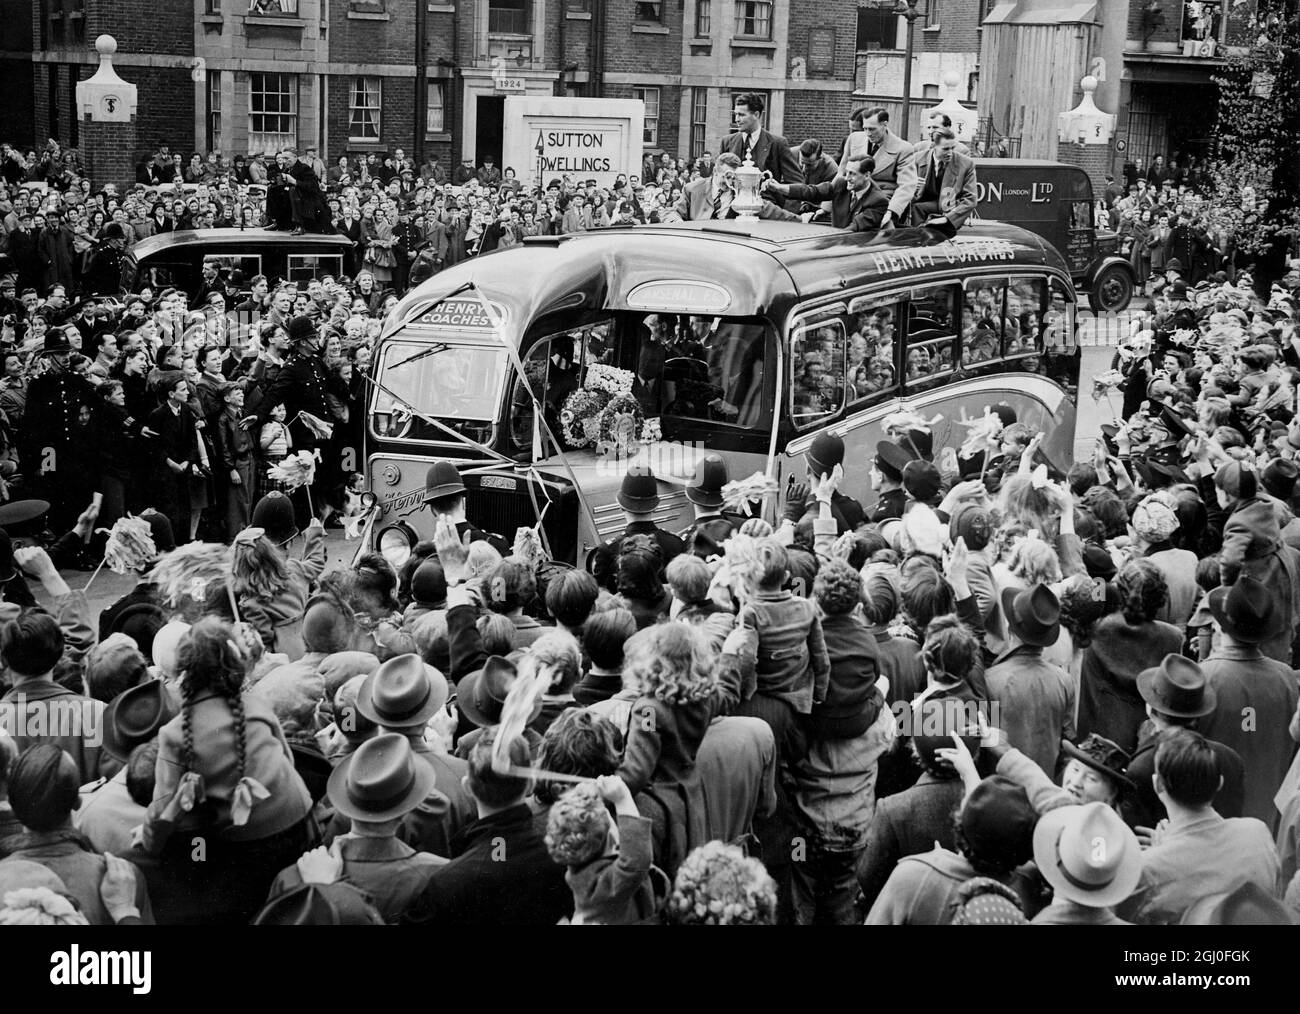 Das Arsenal Football-Team, Sieger des Pokalfinales am Samstag in Wembley, wurde vom Bürgermeister und der Corporation of Islington im Rathaus empfangen. Das Bild zeigt den Reisebus mit Teammitgliedern und Kapitän Joe Mercer, der den Pokal hält, auf seinem Weg durch die jubelnden Massen zum Rathaus. Mai 1950 Stockfoto